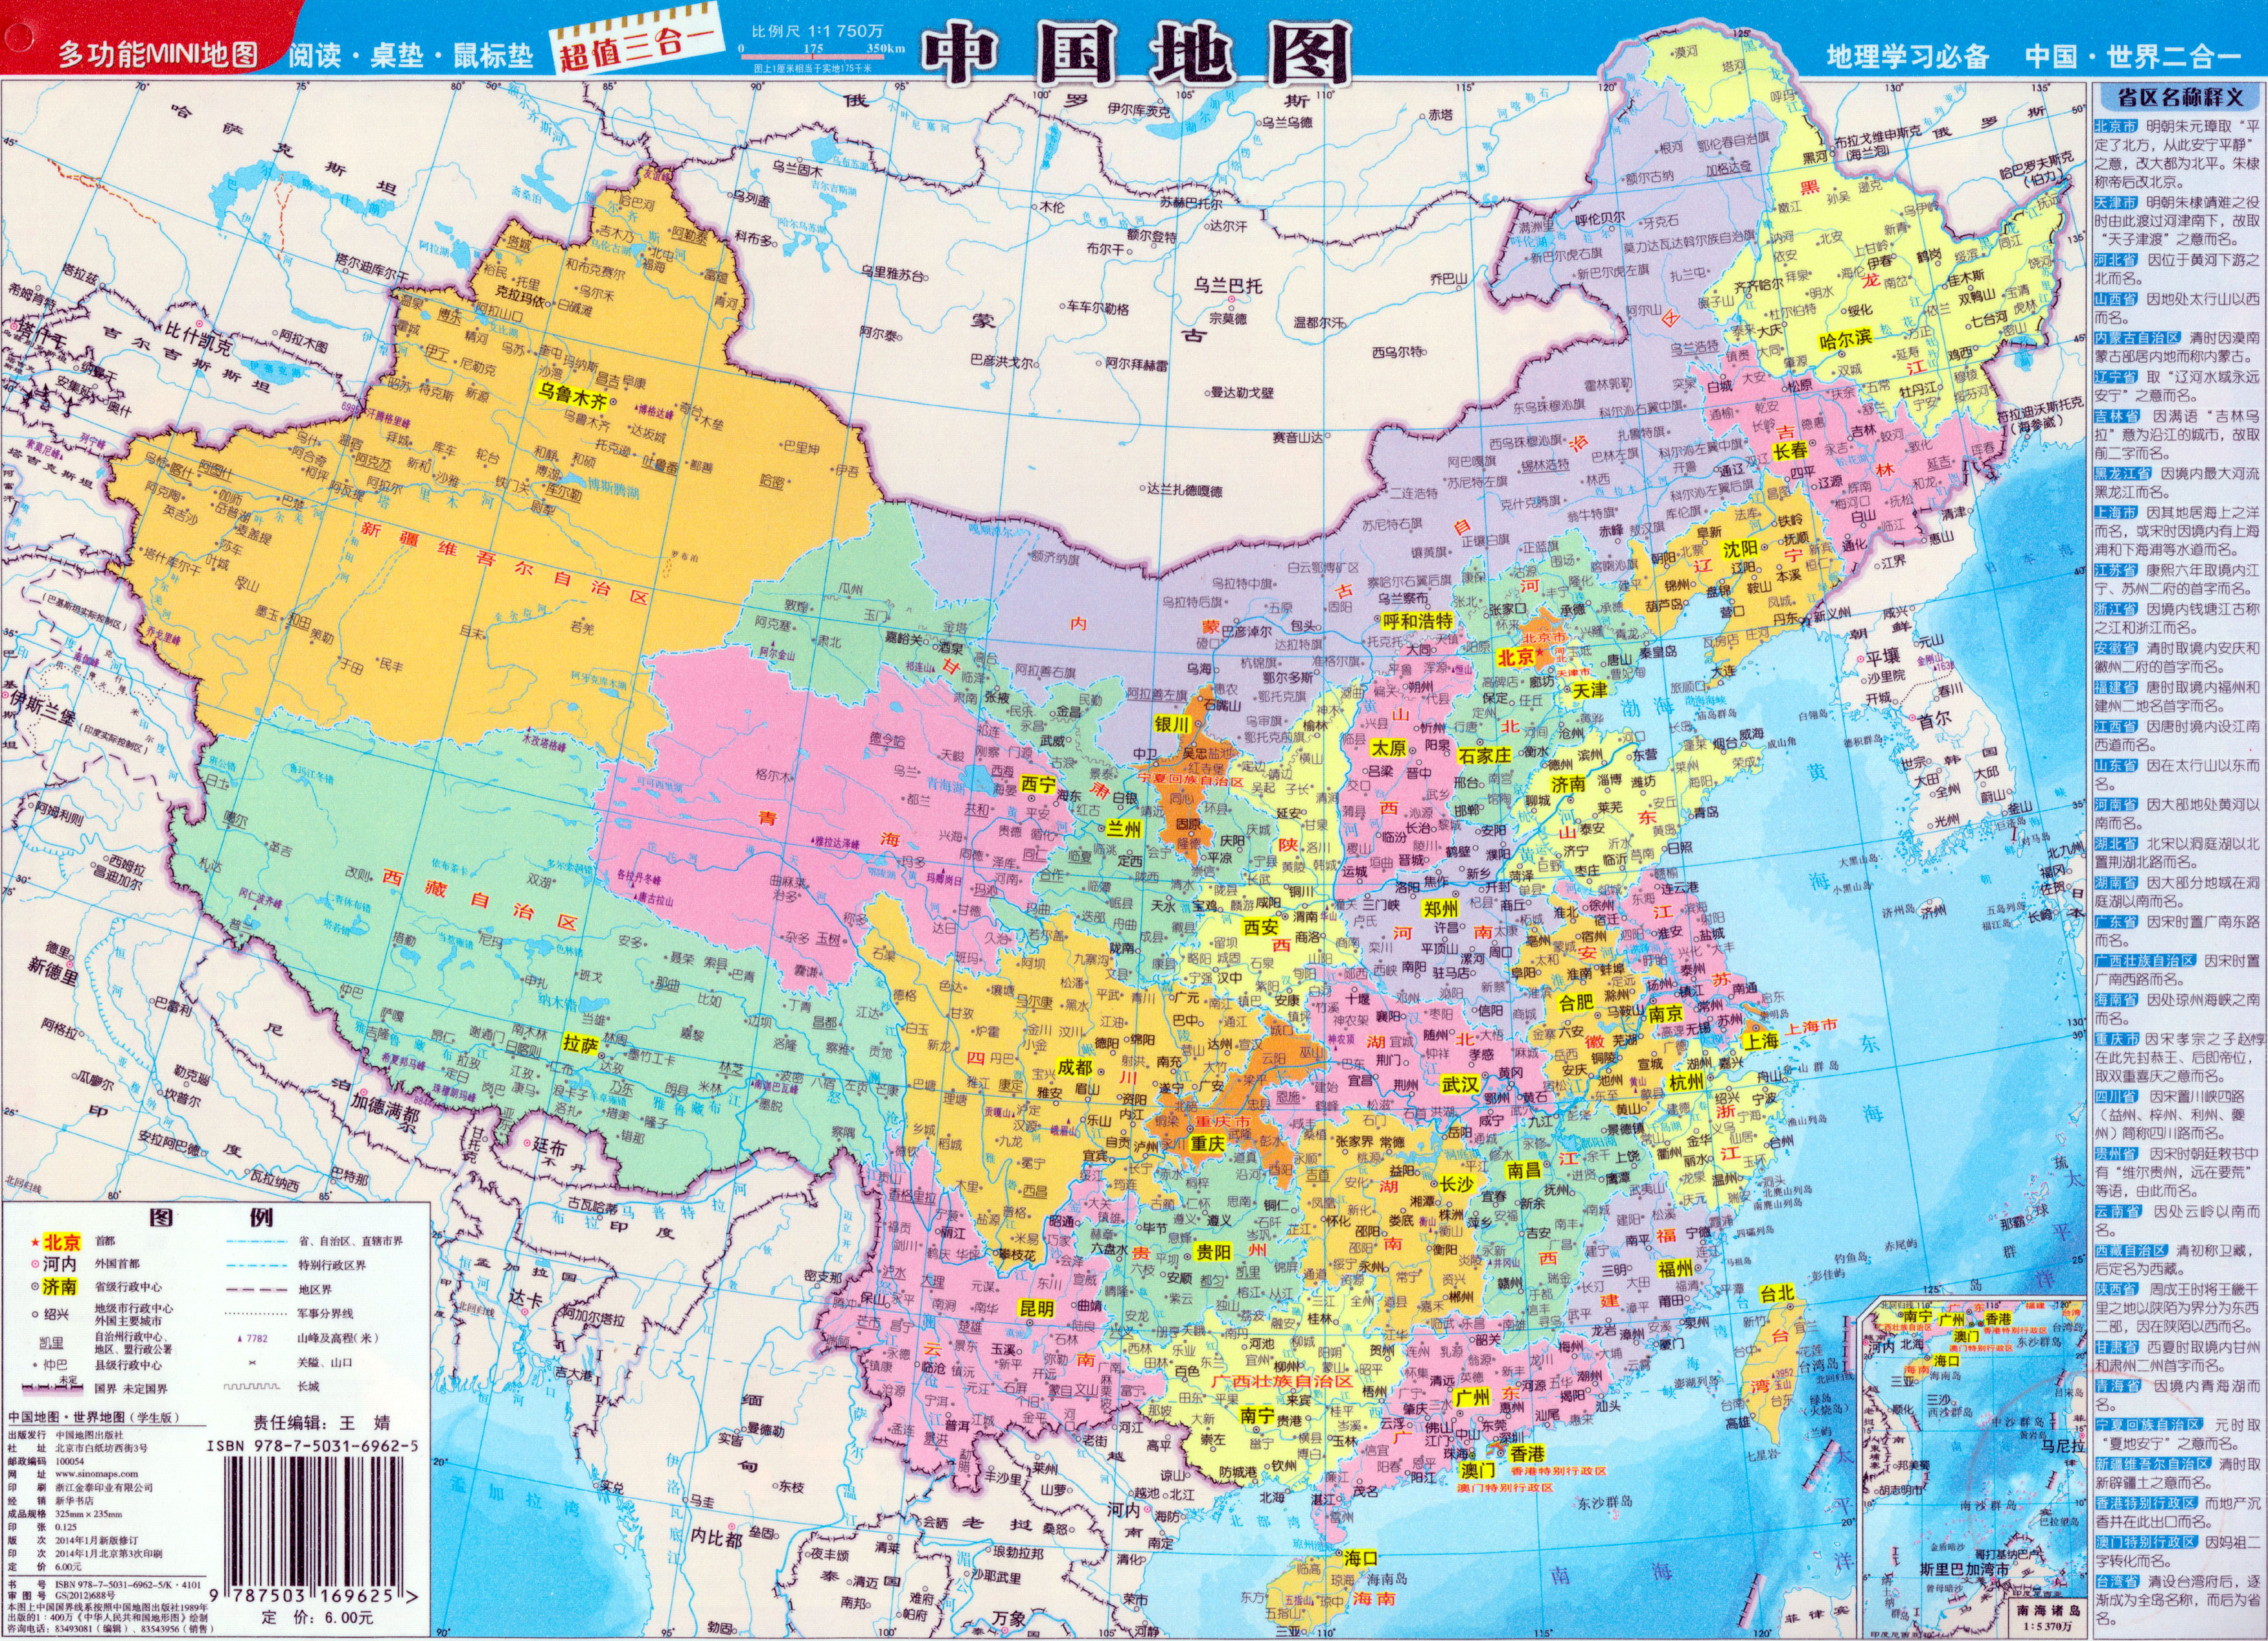 2012年,随着海南三沙市的成立,祖国横版地图变为竖版地图,"雄鸡"型图片